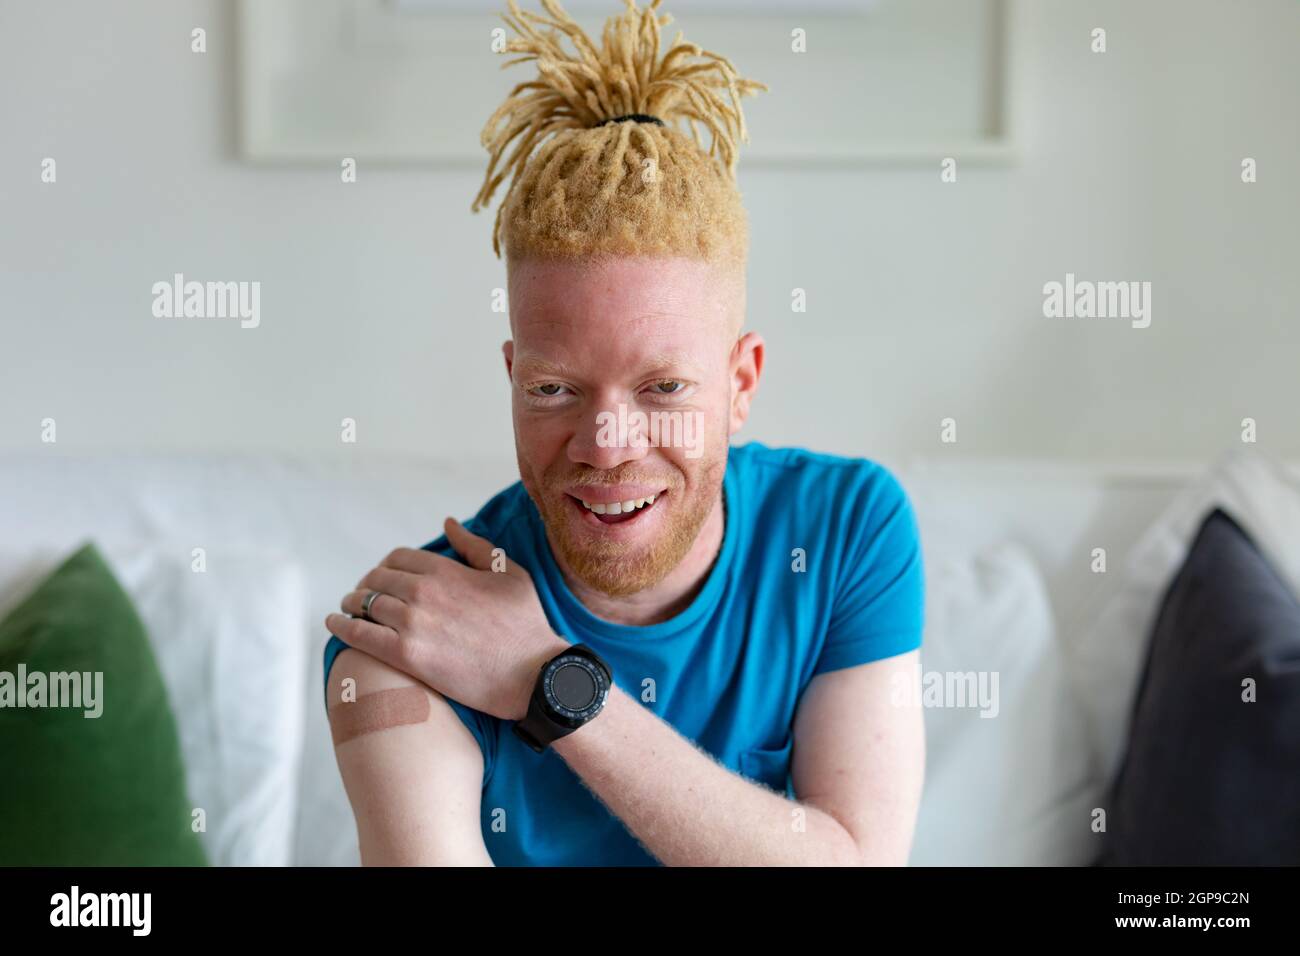 albino black person